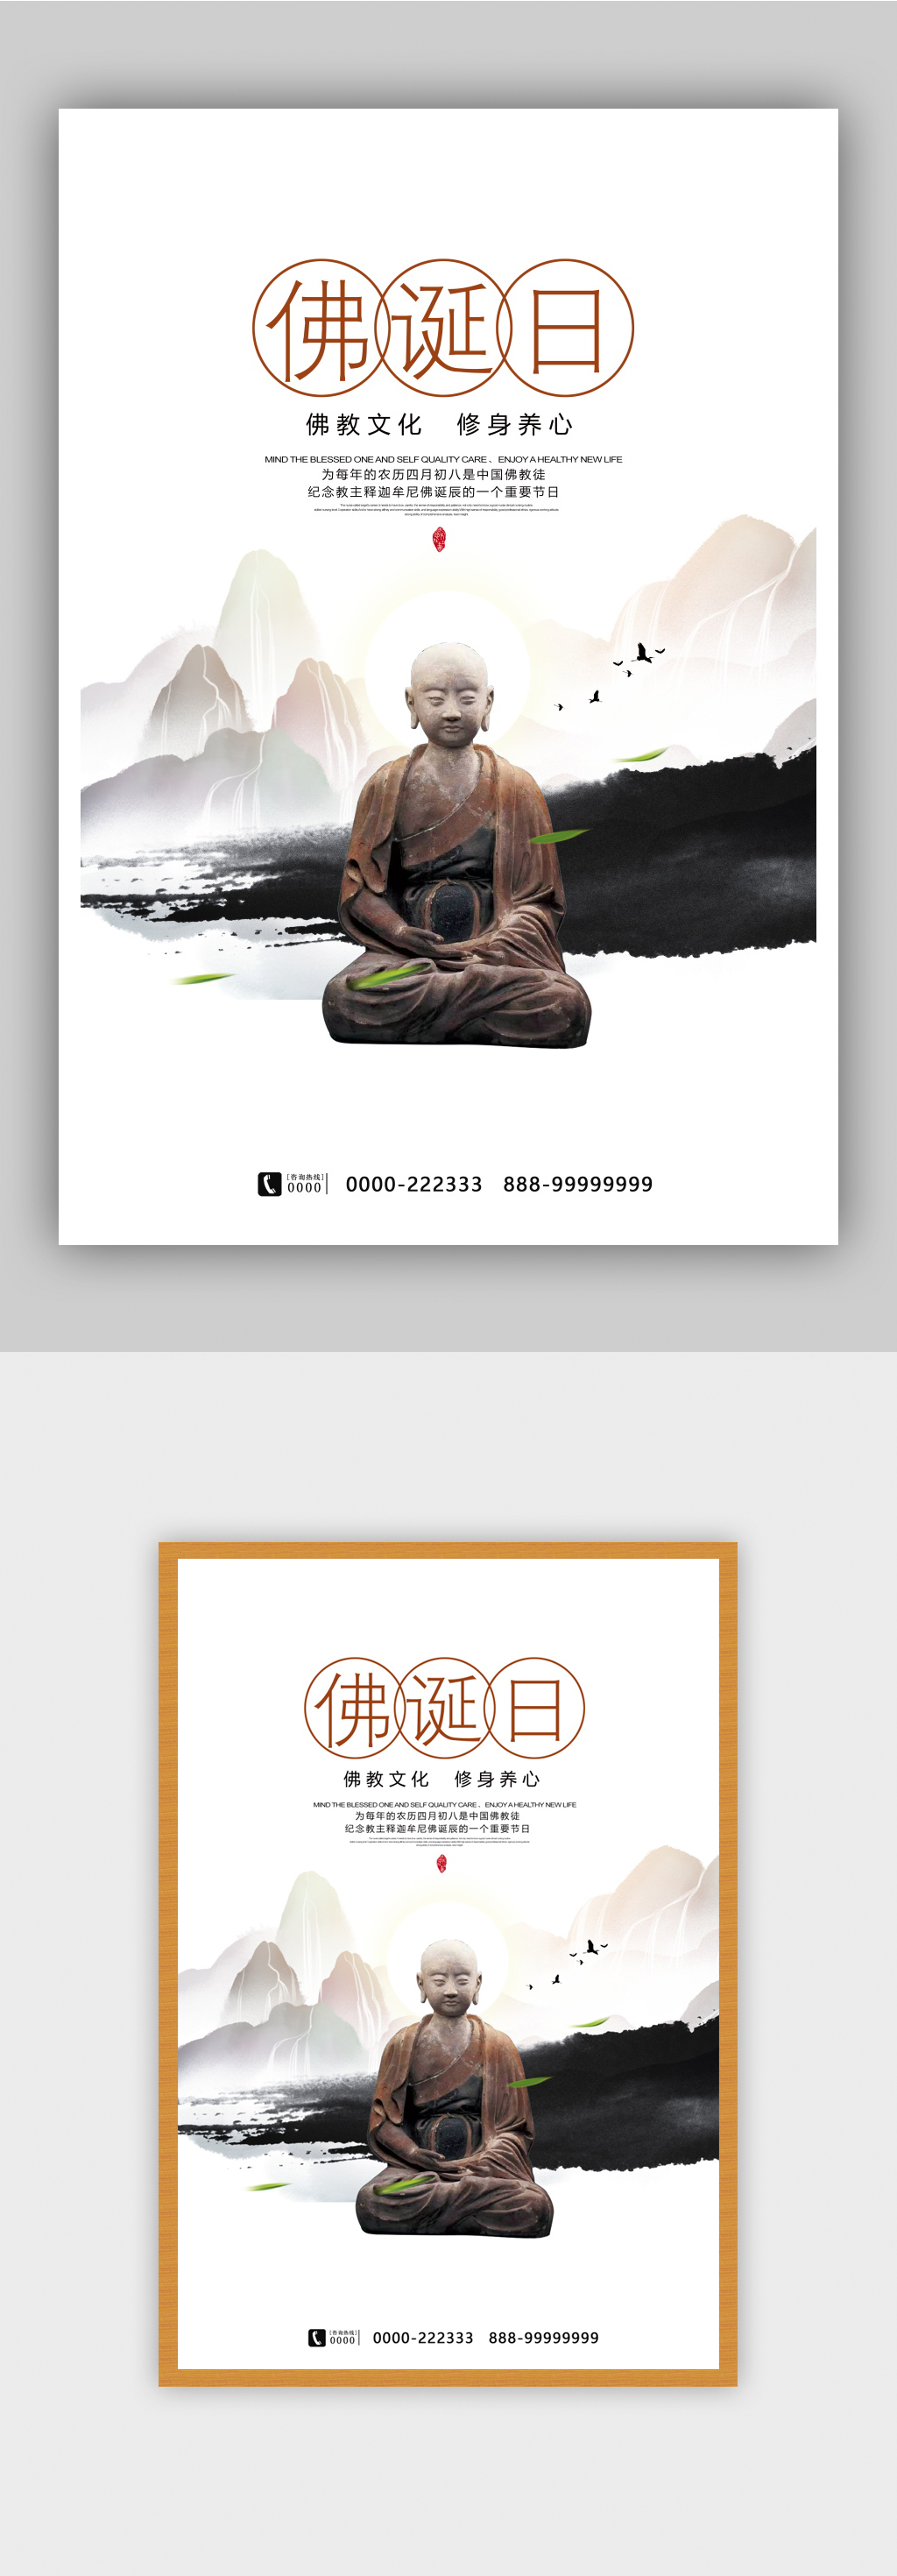 佛诞日佛教文化宣传海报设计